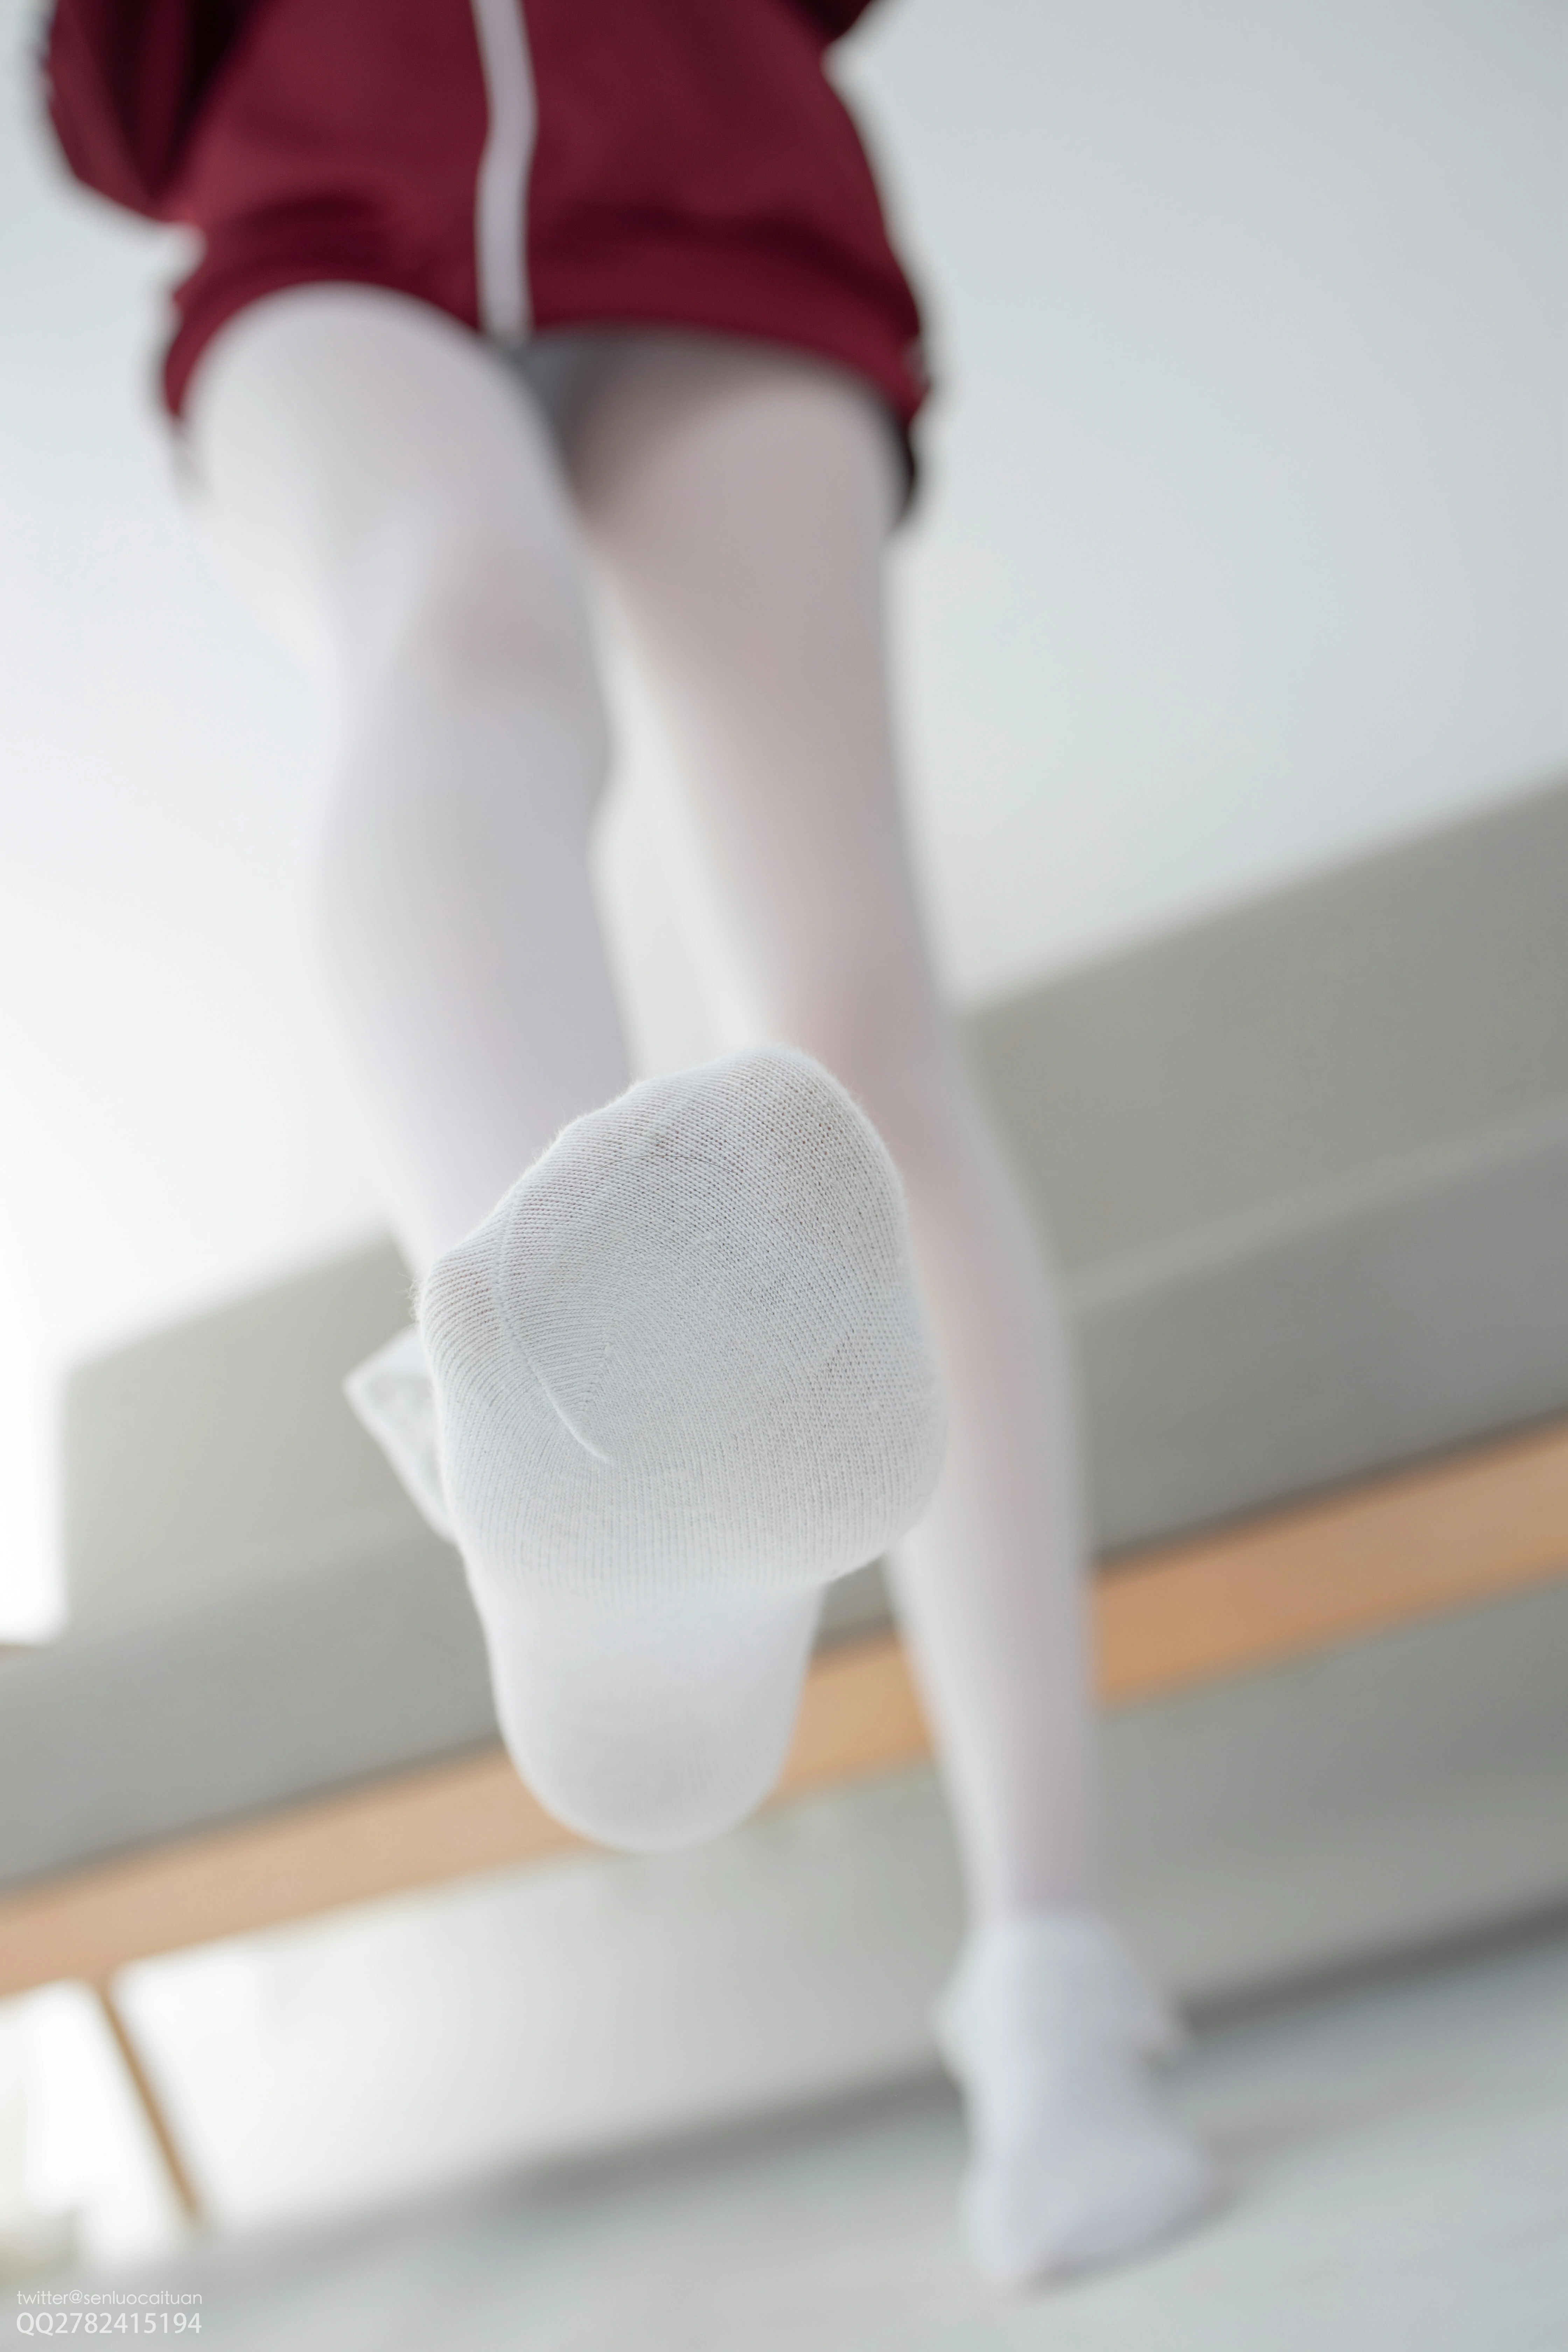 [森萝财团]JKFUN-百元系列2-3 《白丝套蕾丝花边短袜》 匿名 红色卫衣加白色丝袜美腿玉足性感私房写真集,